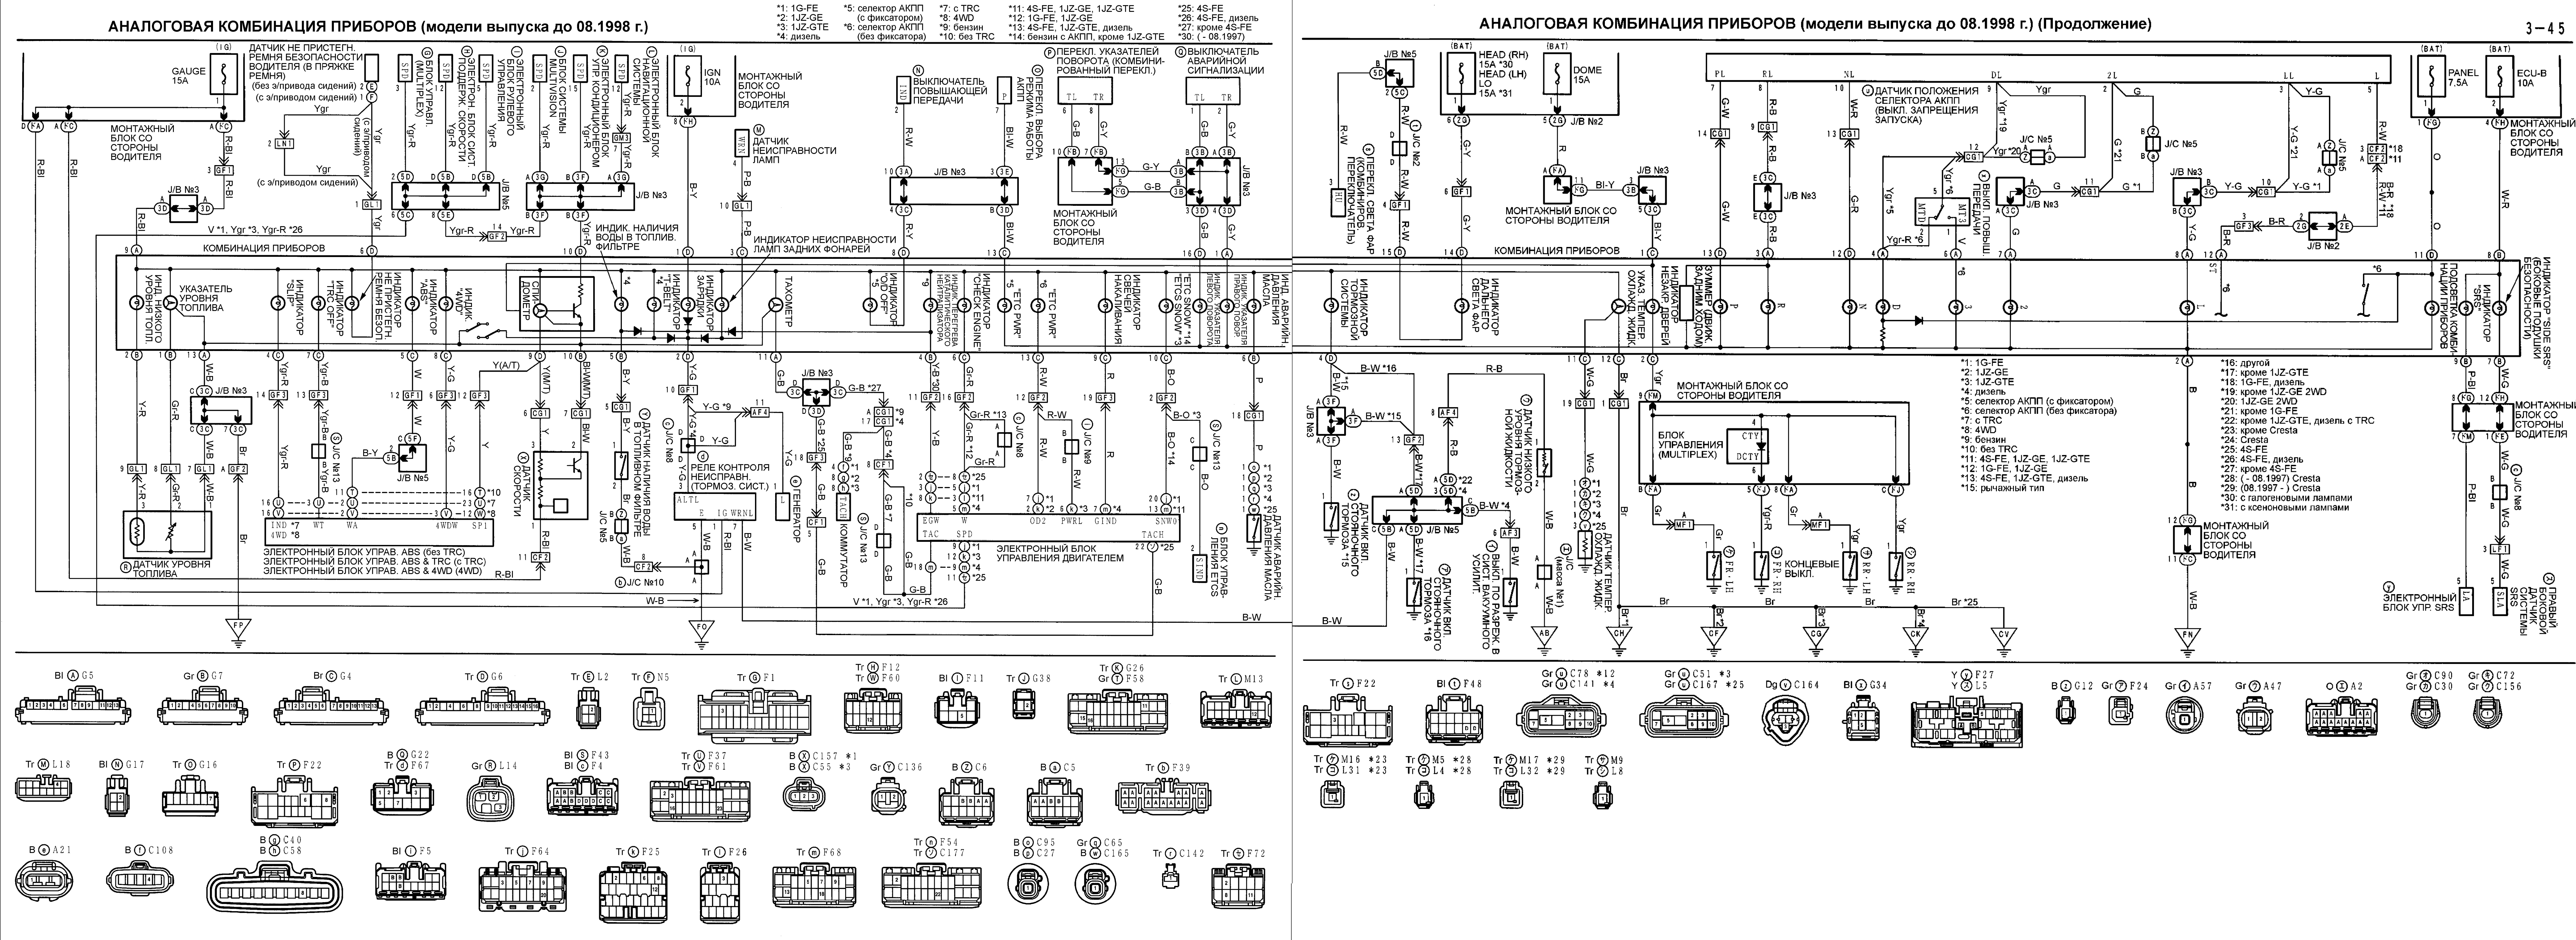 Аналоговая комбинация приборов Toyota MARK II CHASER CRESTA до 08.1998